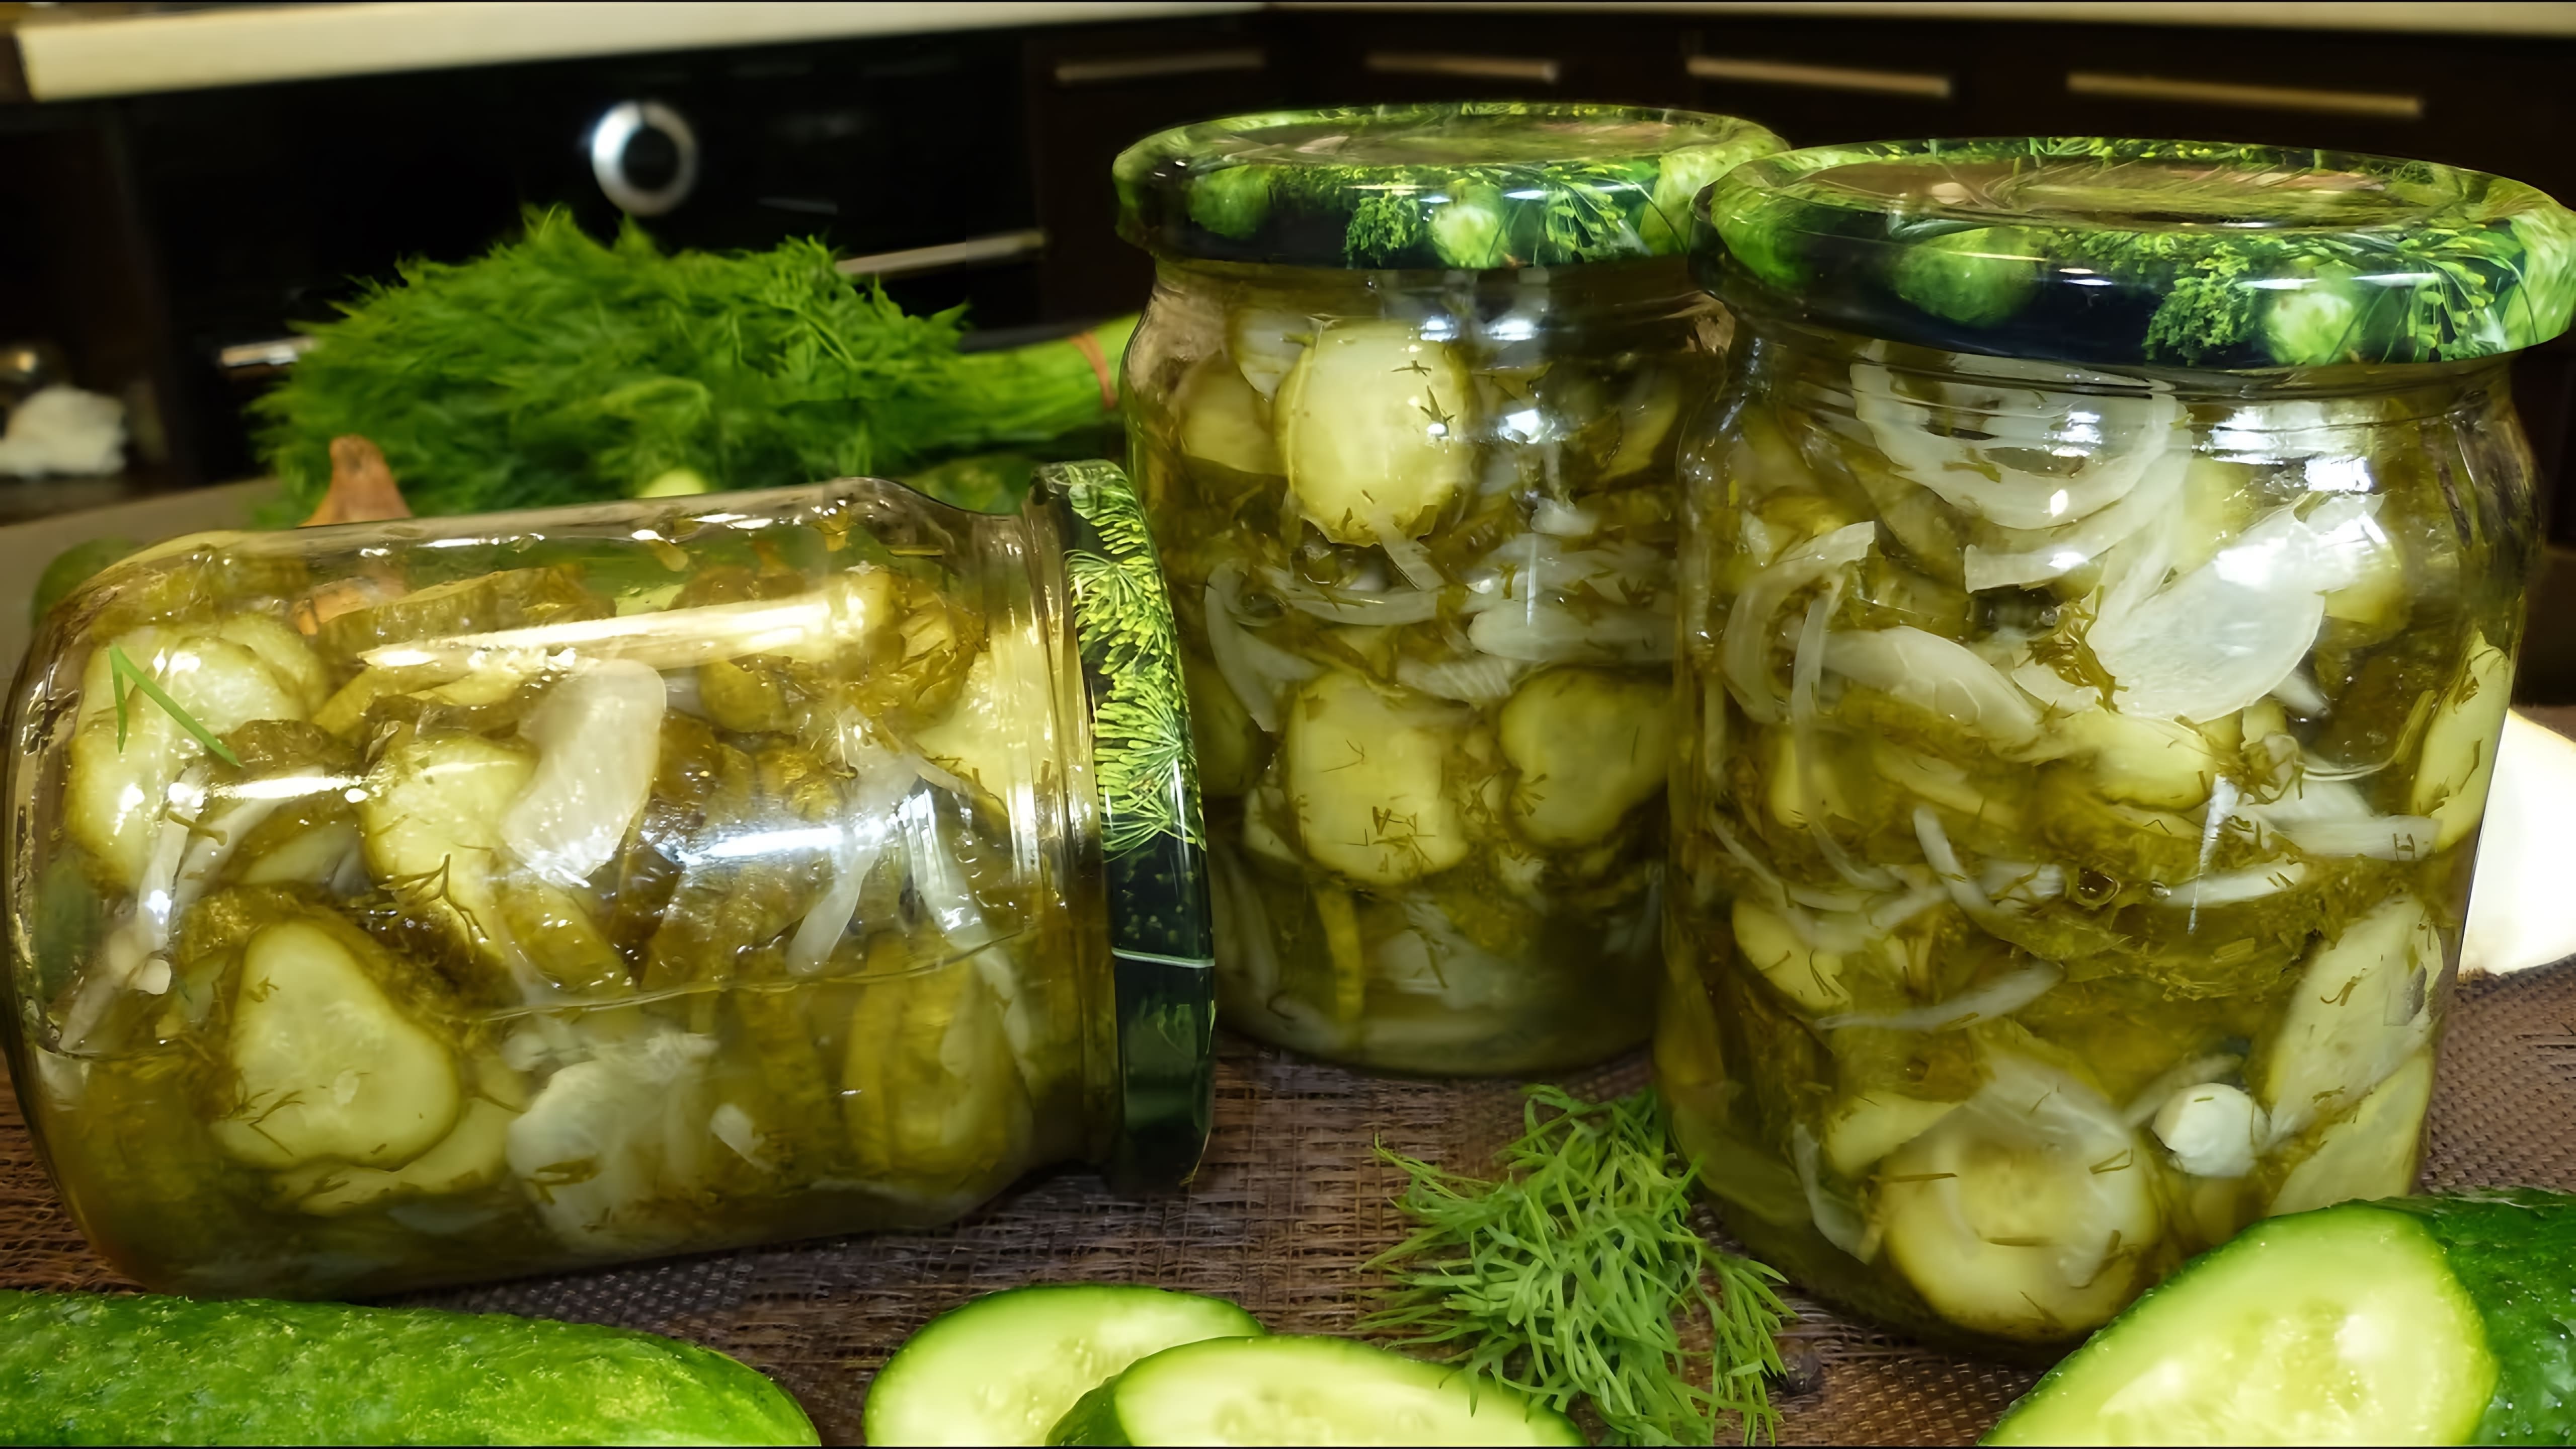 Видео рецепт маринованного огуречного салата под названием "Салат Нежинский", который готовится для зимнего хранения